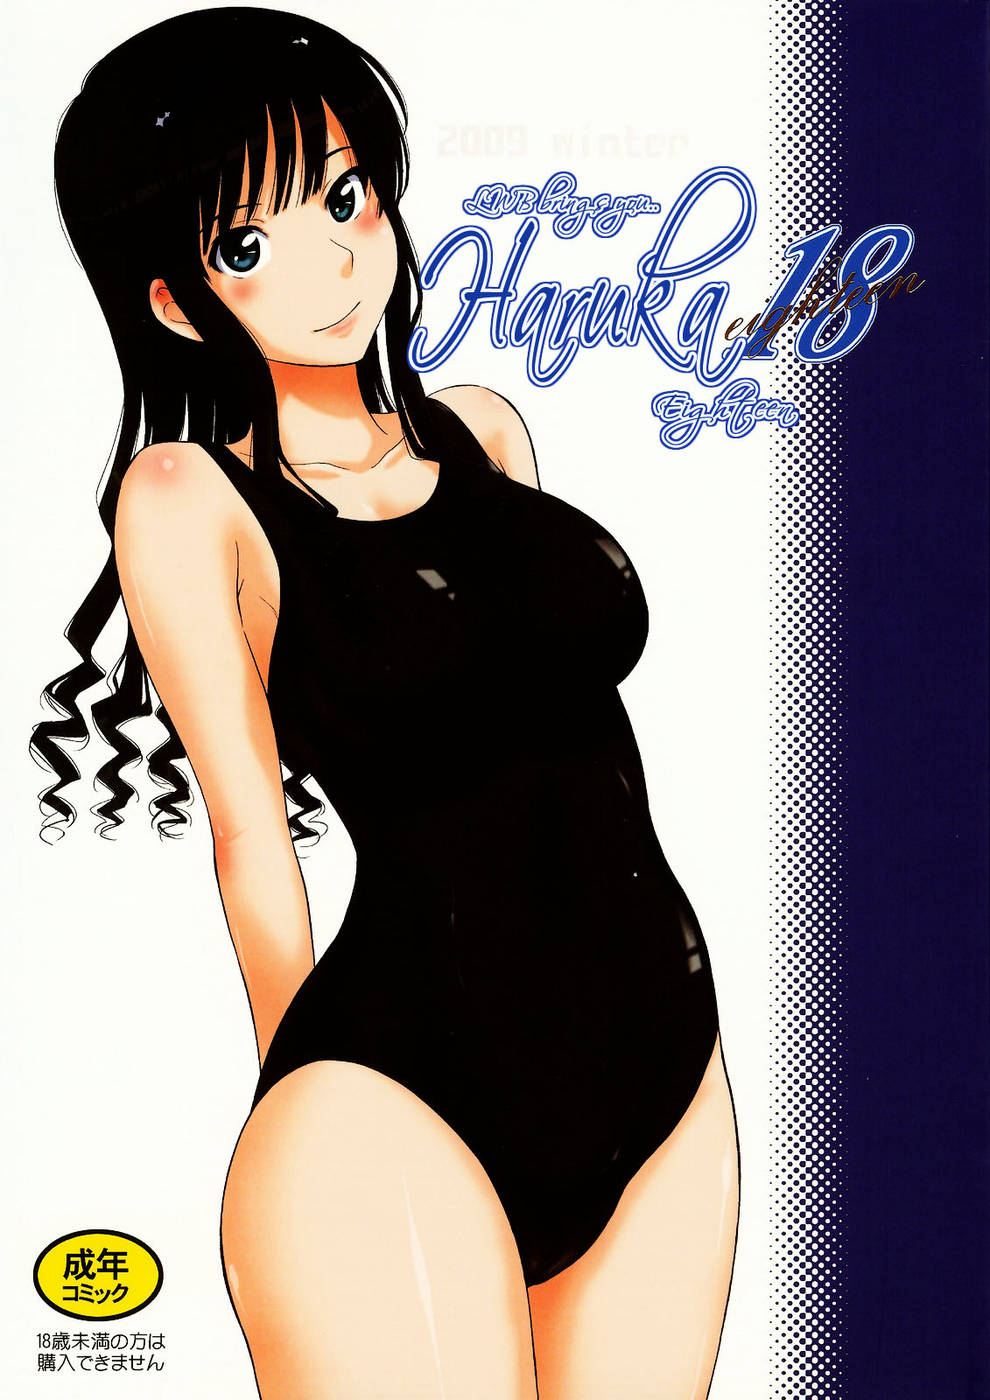 Hentai Manga Comic-Haruka 18-Read-1